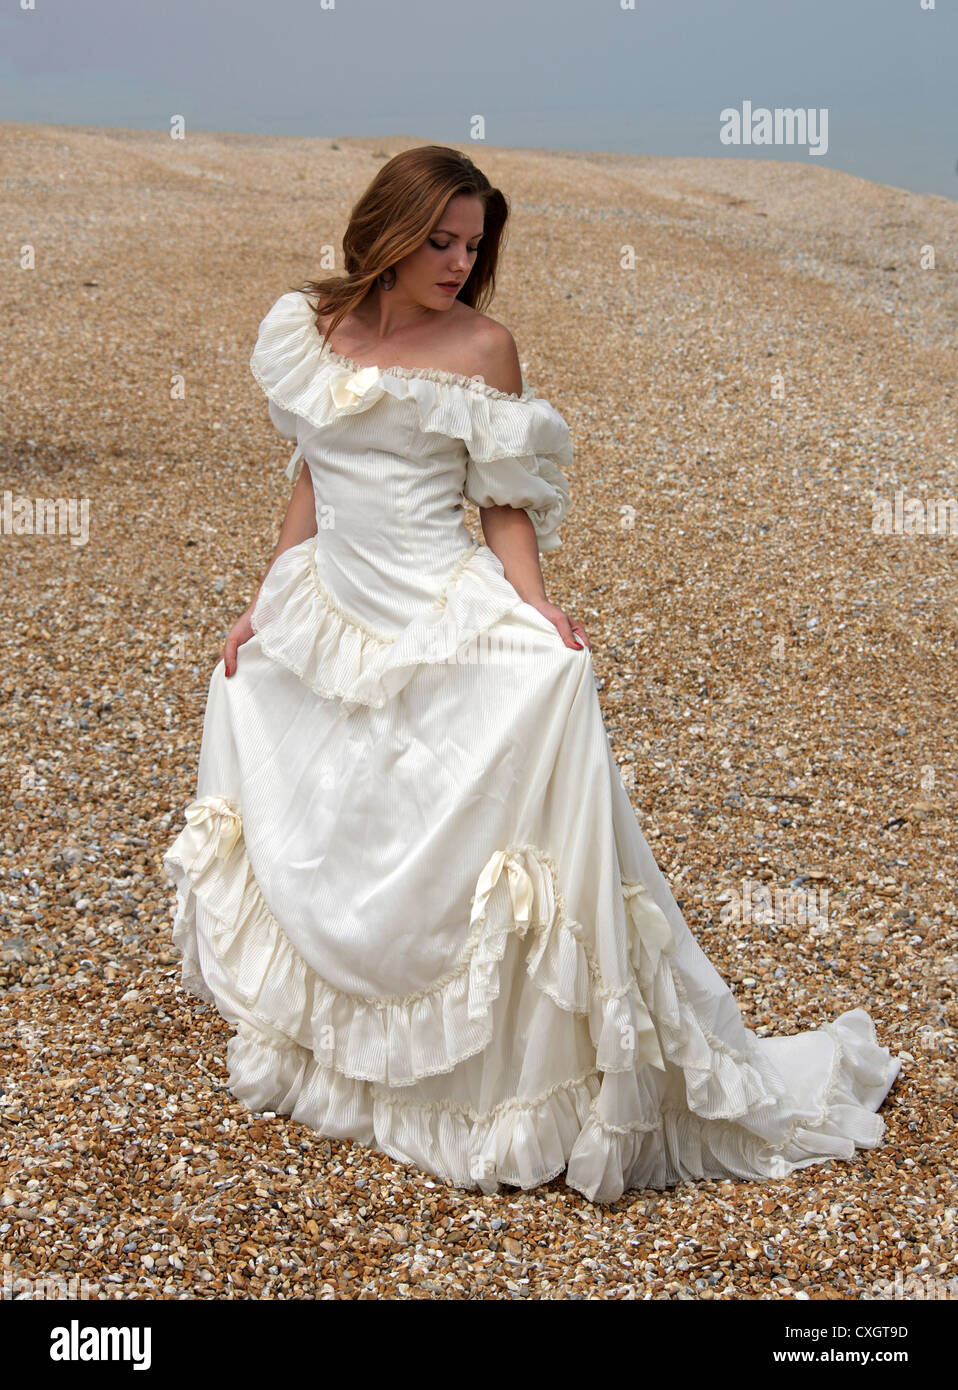 Jeune fille portant une robe de mariage blanc crème sur une plage de galets au bord de la mer. Banque D'Images